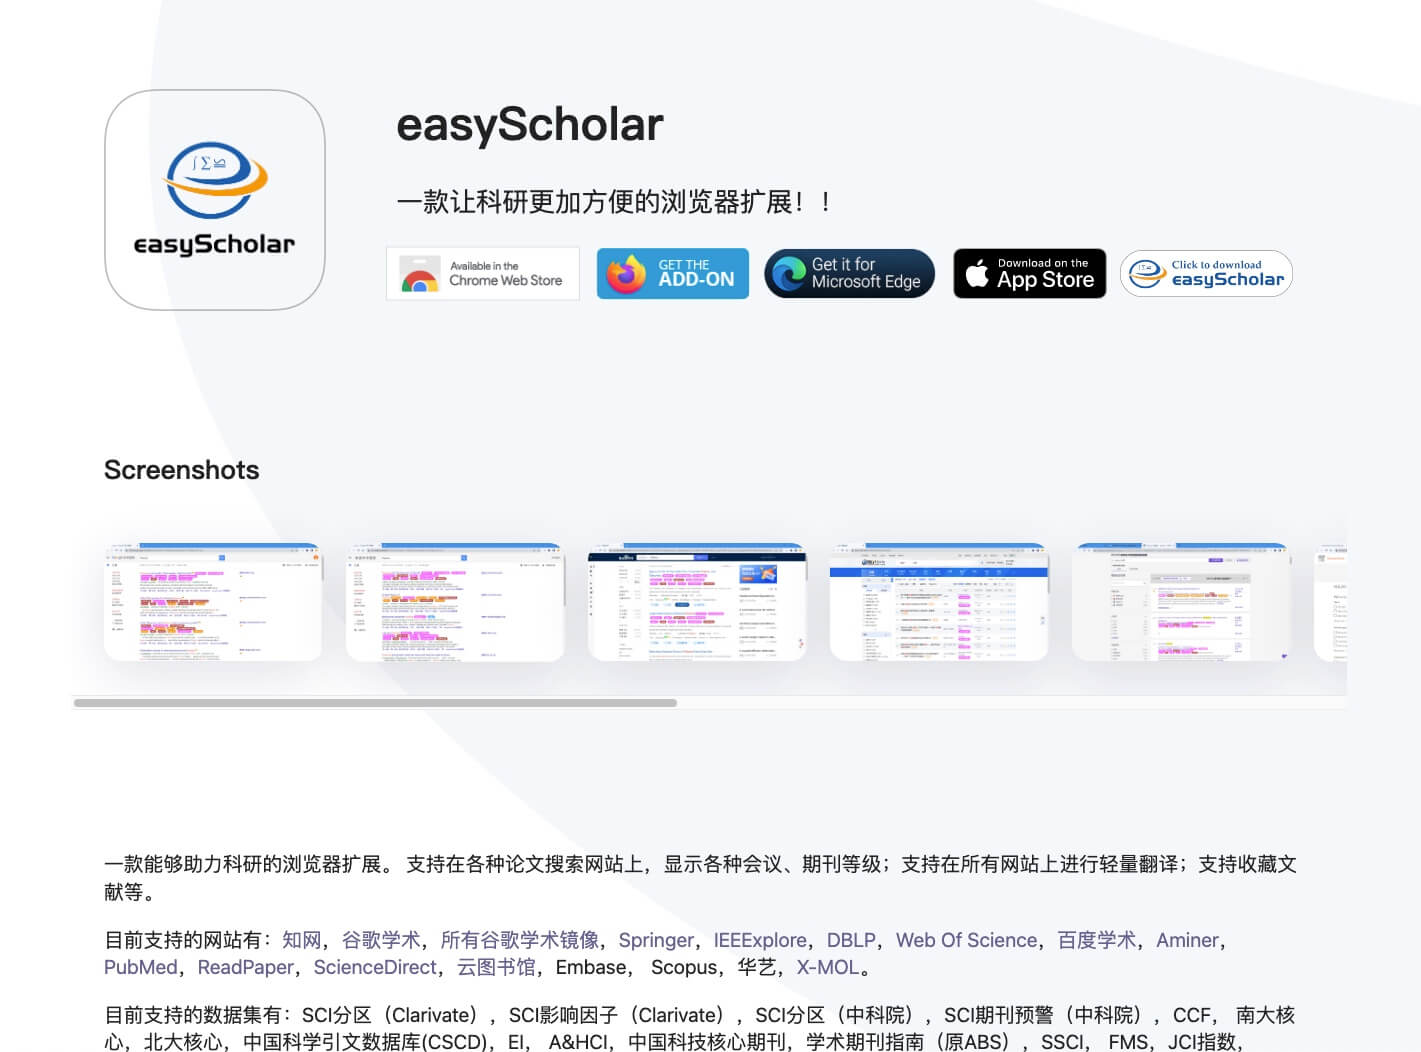 easyScholar -  助力科研的浏览器插件，论文搜索网站上直接显示会议、期刊等级